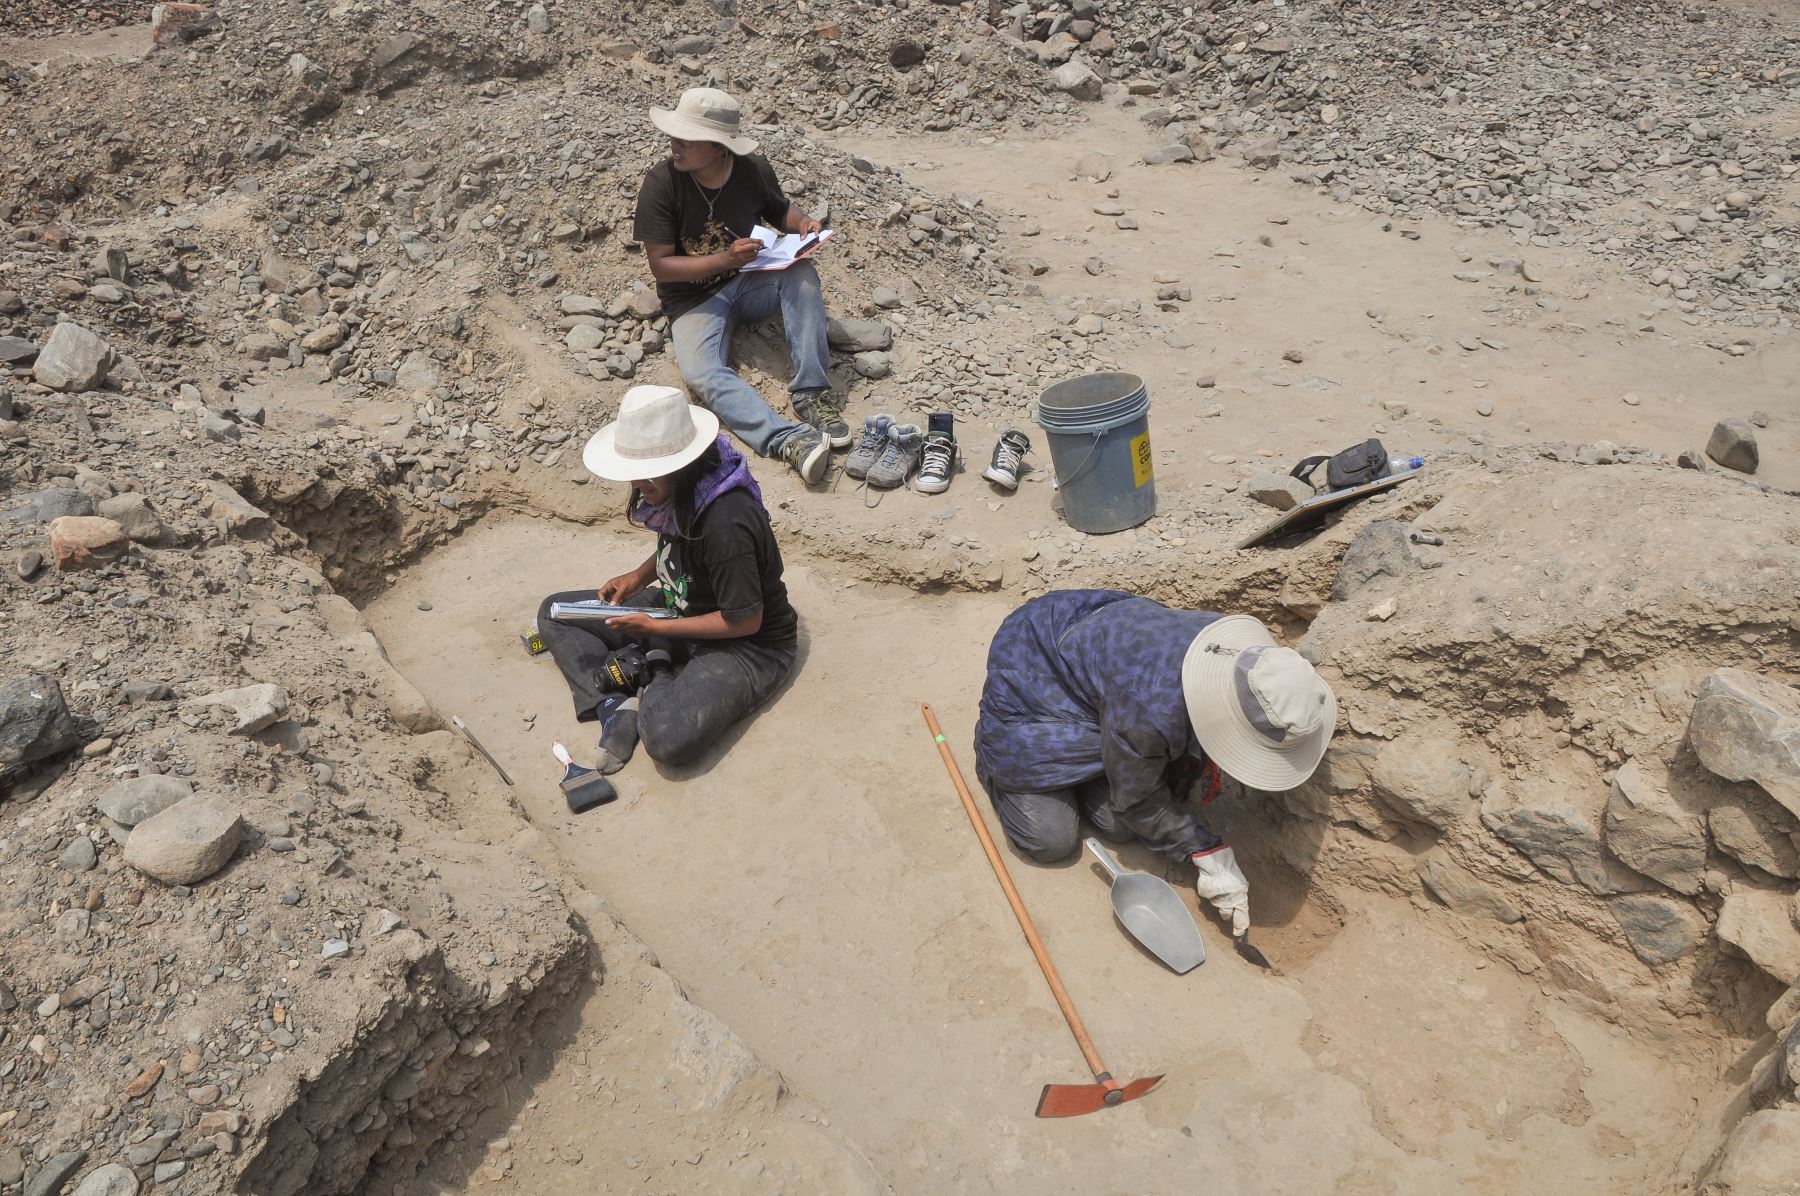 Un importante hallazgo arqueológico realizaron investigadores de la Universidad Nacional Mayor de San Marcos (UNMSM) en el valle de Chicama, región La Libertad. En esta zona fue descubierto un nuevo paisaje arqueológico, con una antigüedad de 500 a 600 años, de origen Chimú.
Foto: Programa Arqueológico Chicama - UNMSM - IPEA